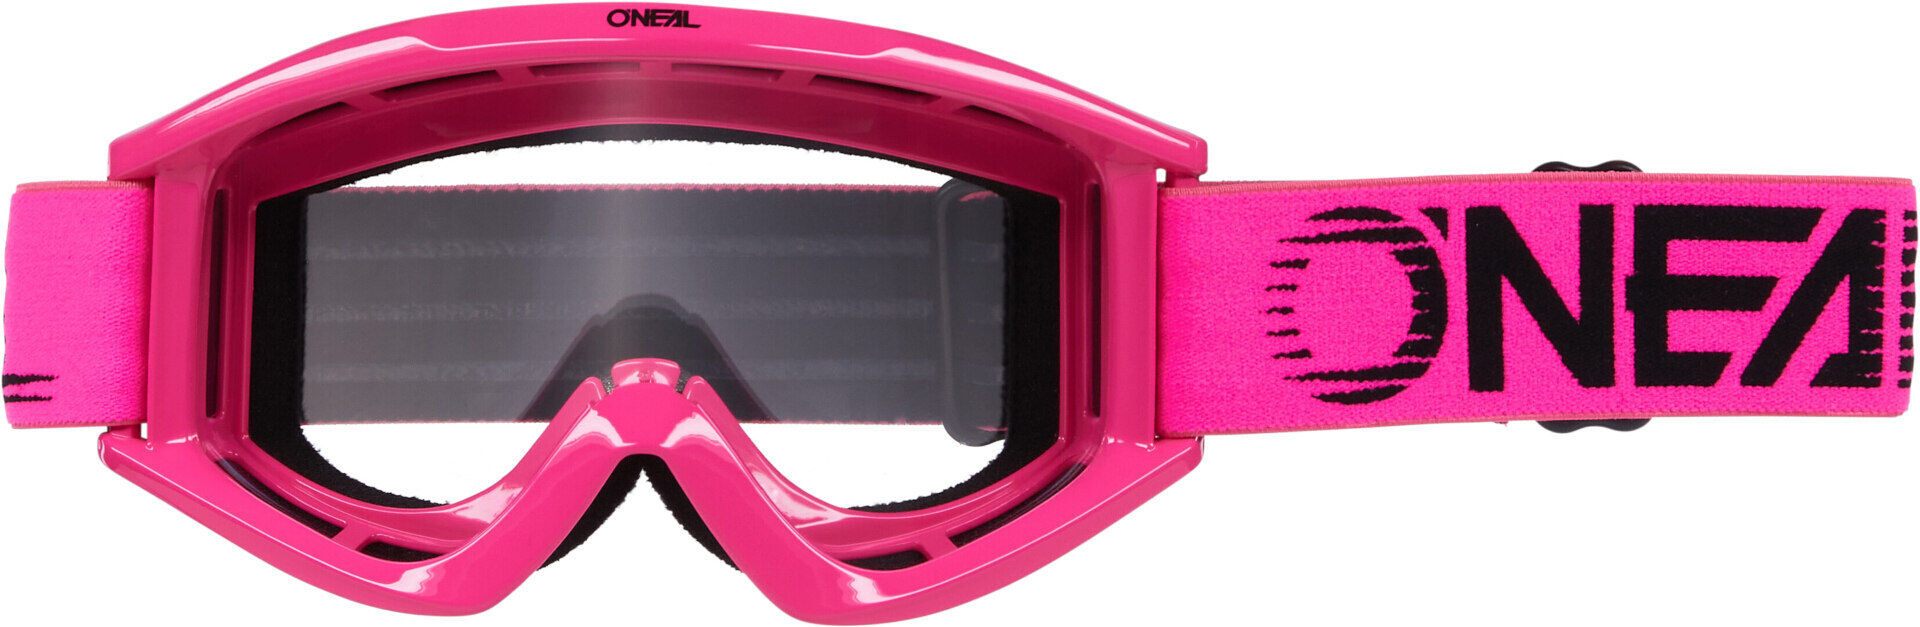 Oneal B-Zero Gafas de Motocross - Rosa